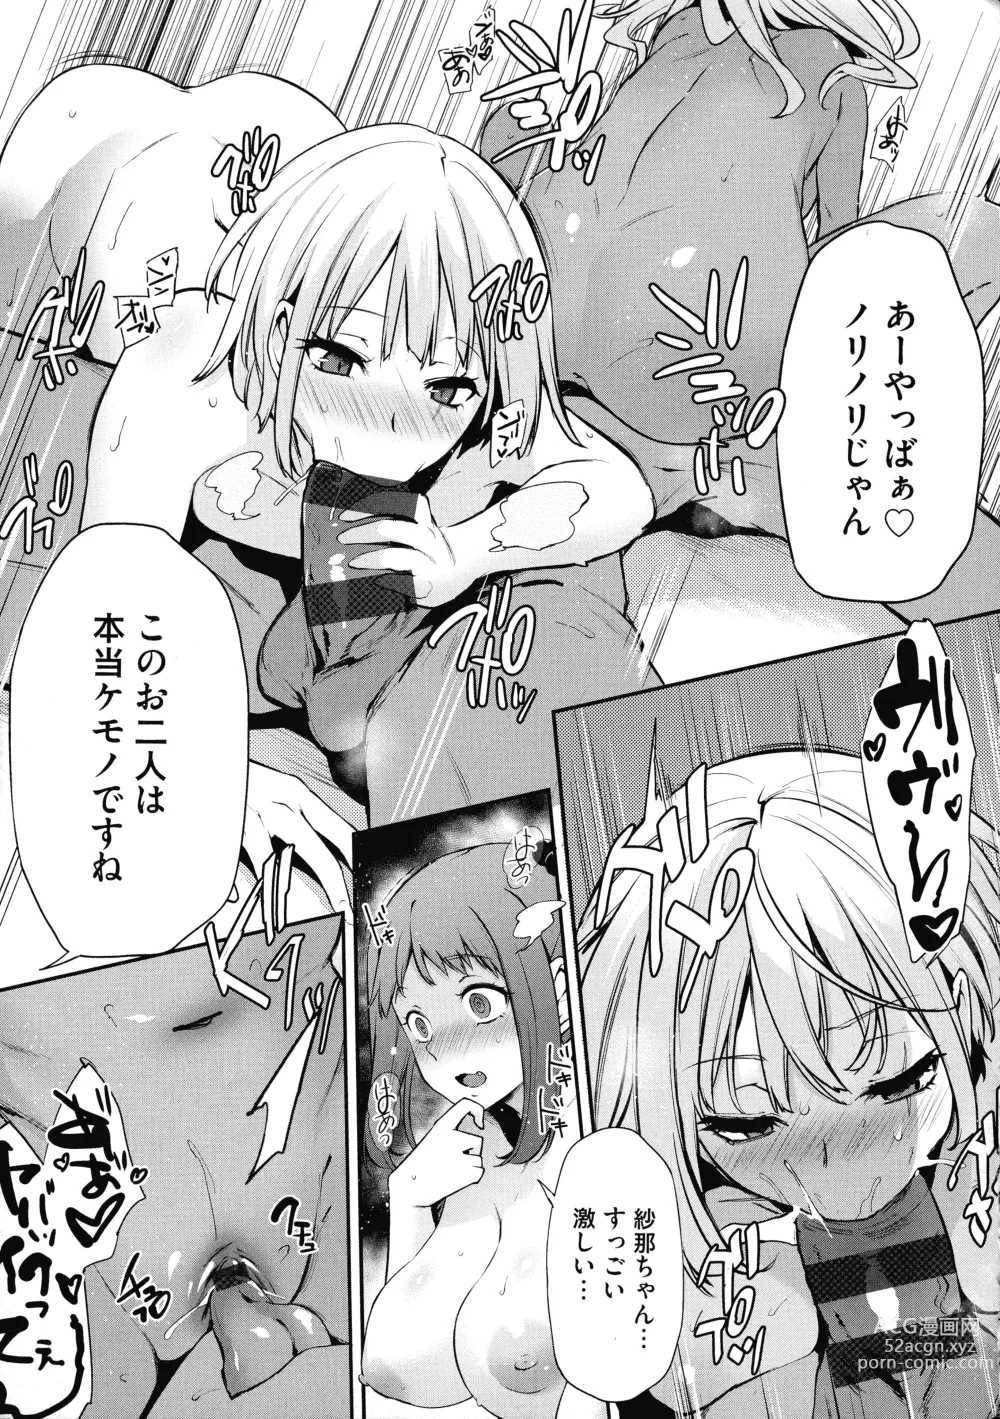 Page 217 of manga Olympia! ~Yarimakuri Gakuen Saisei Kekaku~